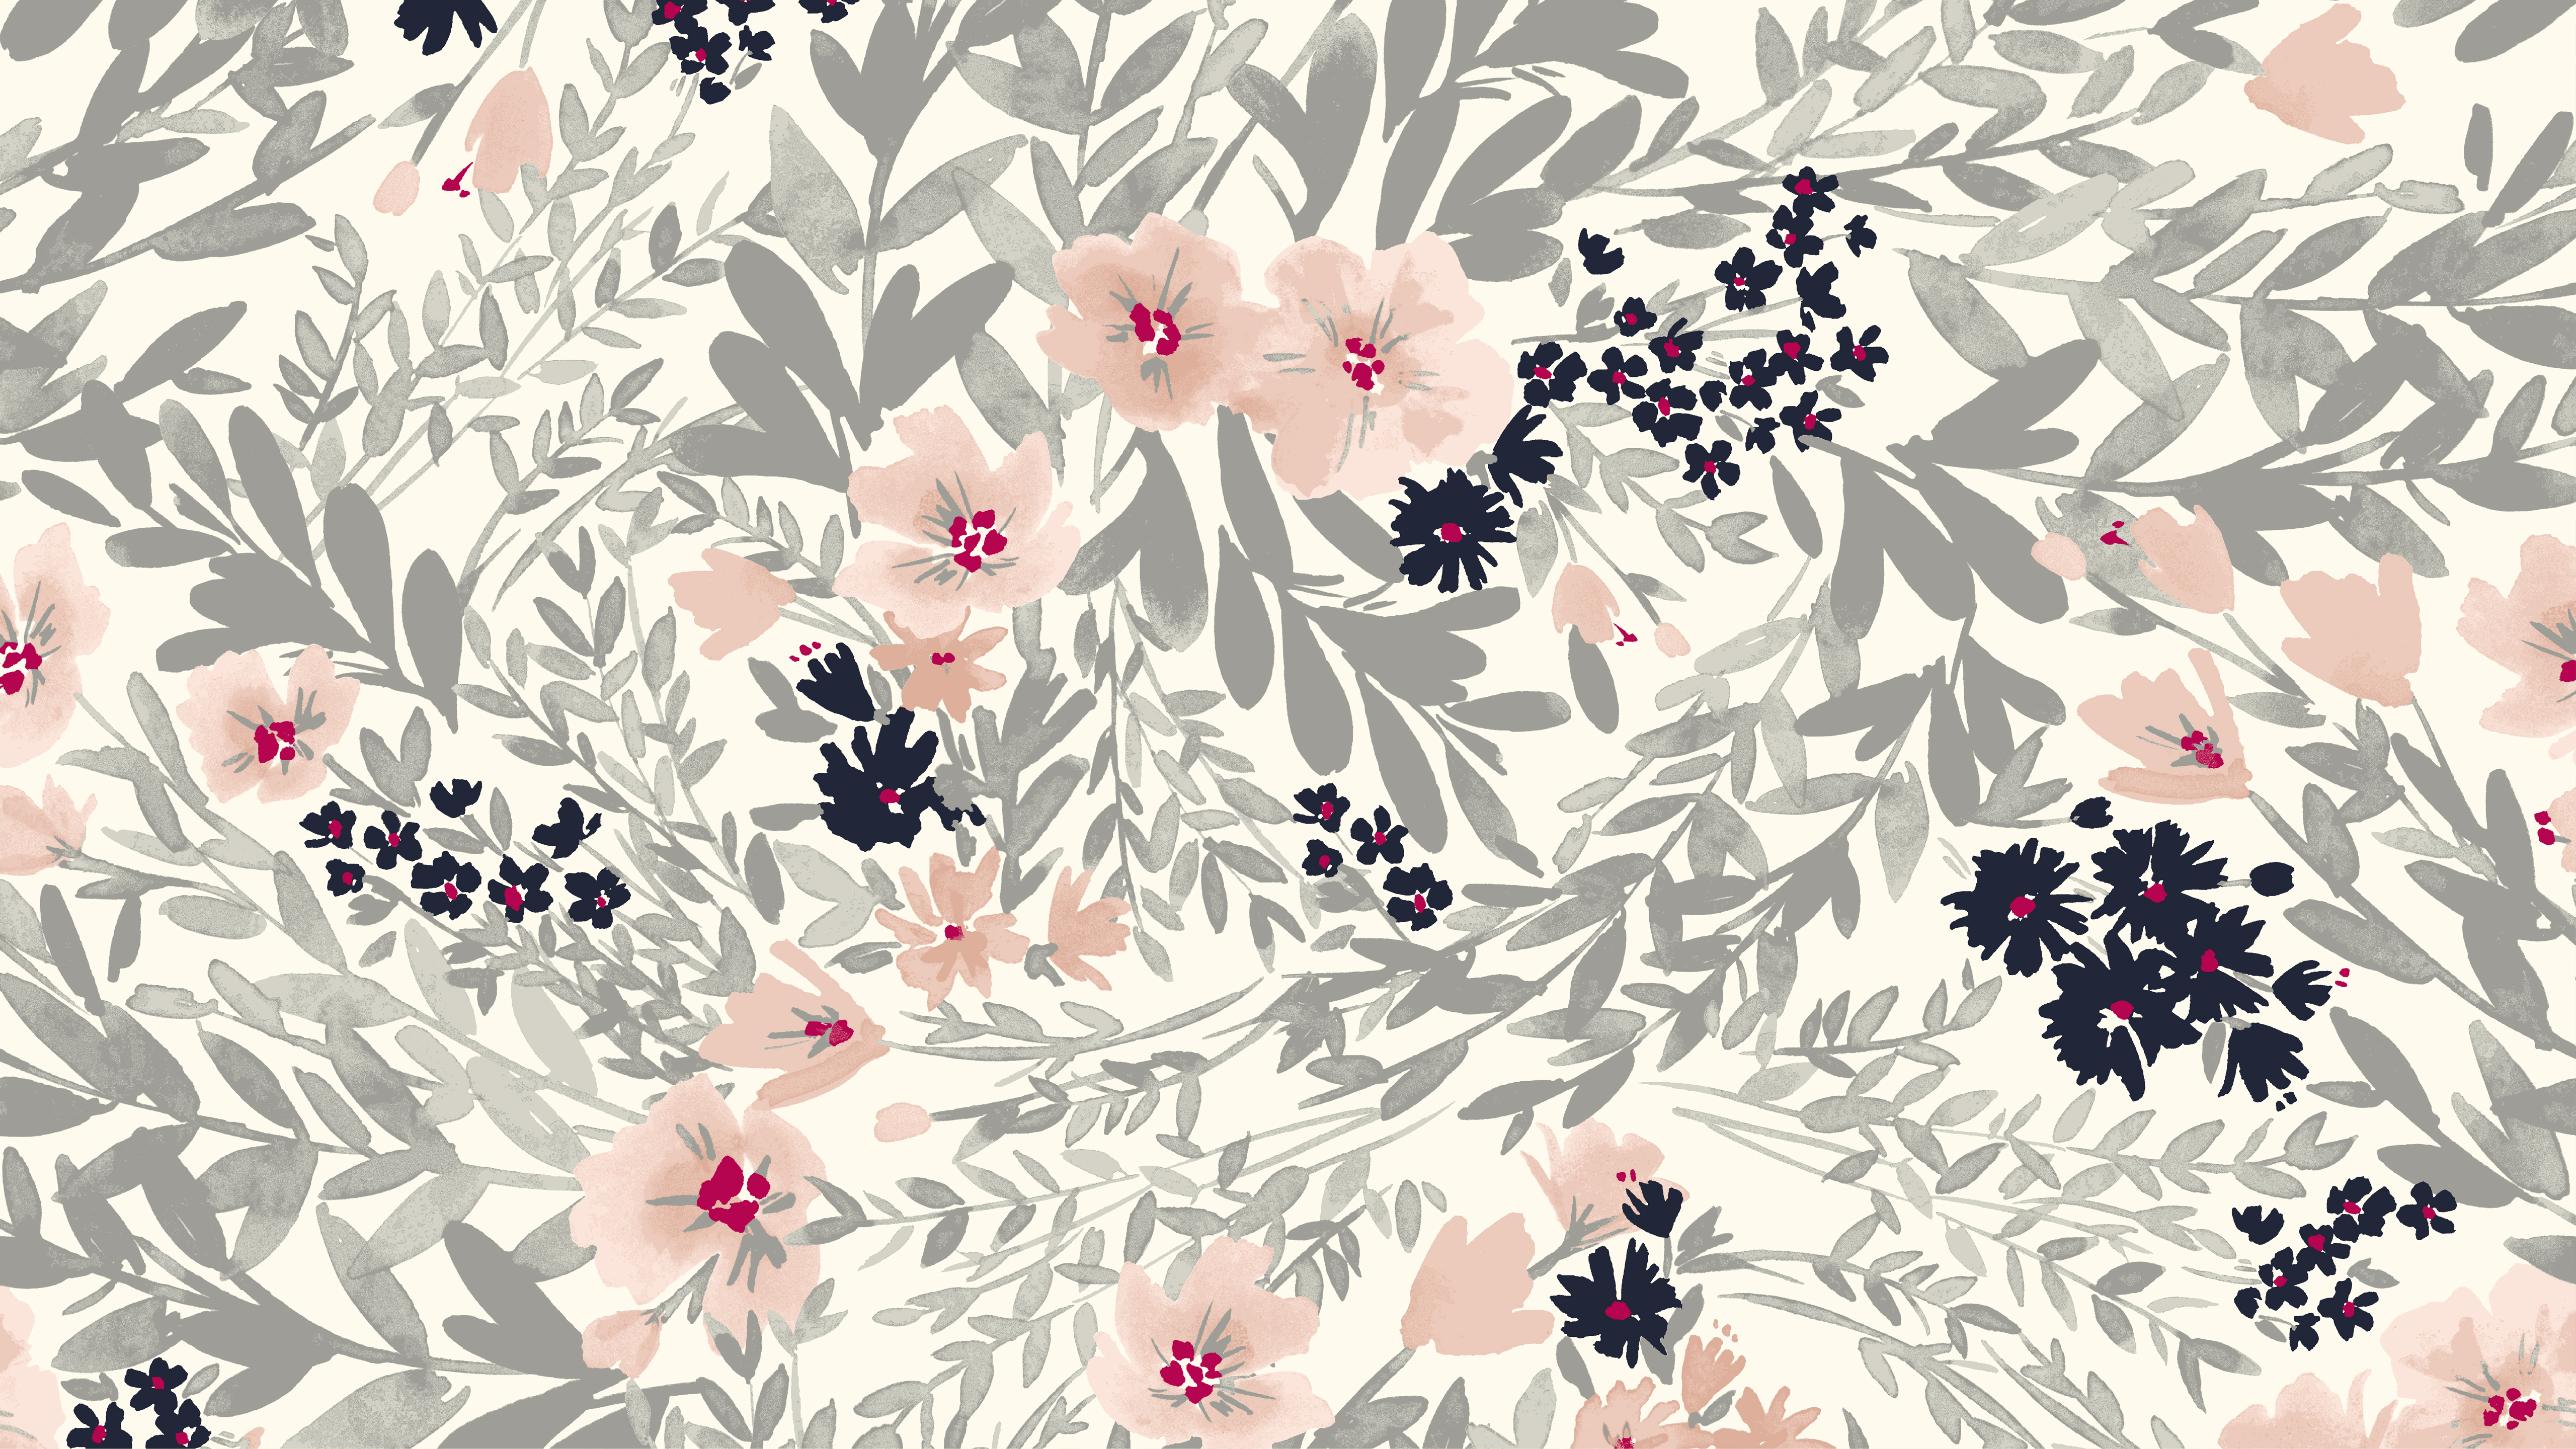 [68+] Free Floral Desktop Wallpaper | WallpaperSafari.com